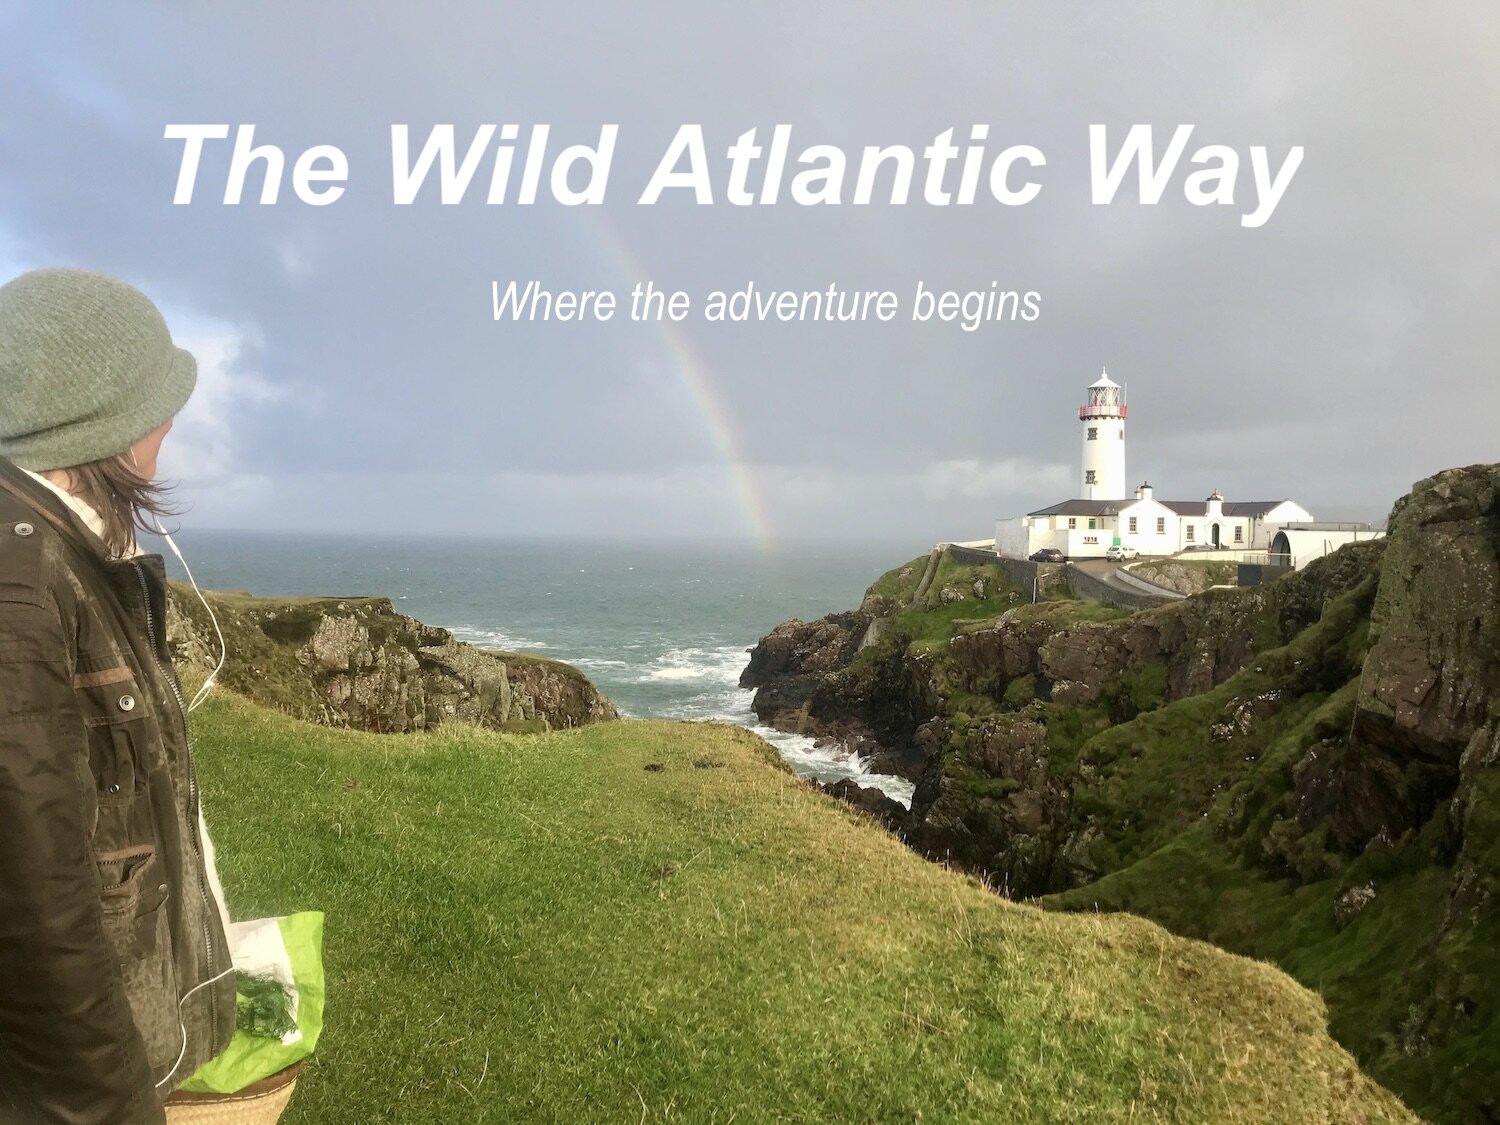 The Wild Atlantic Way